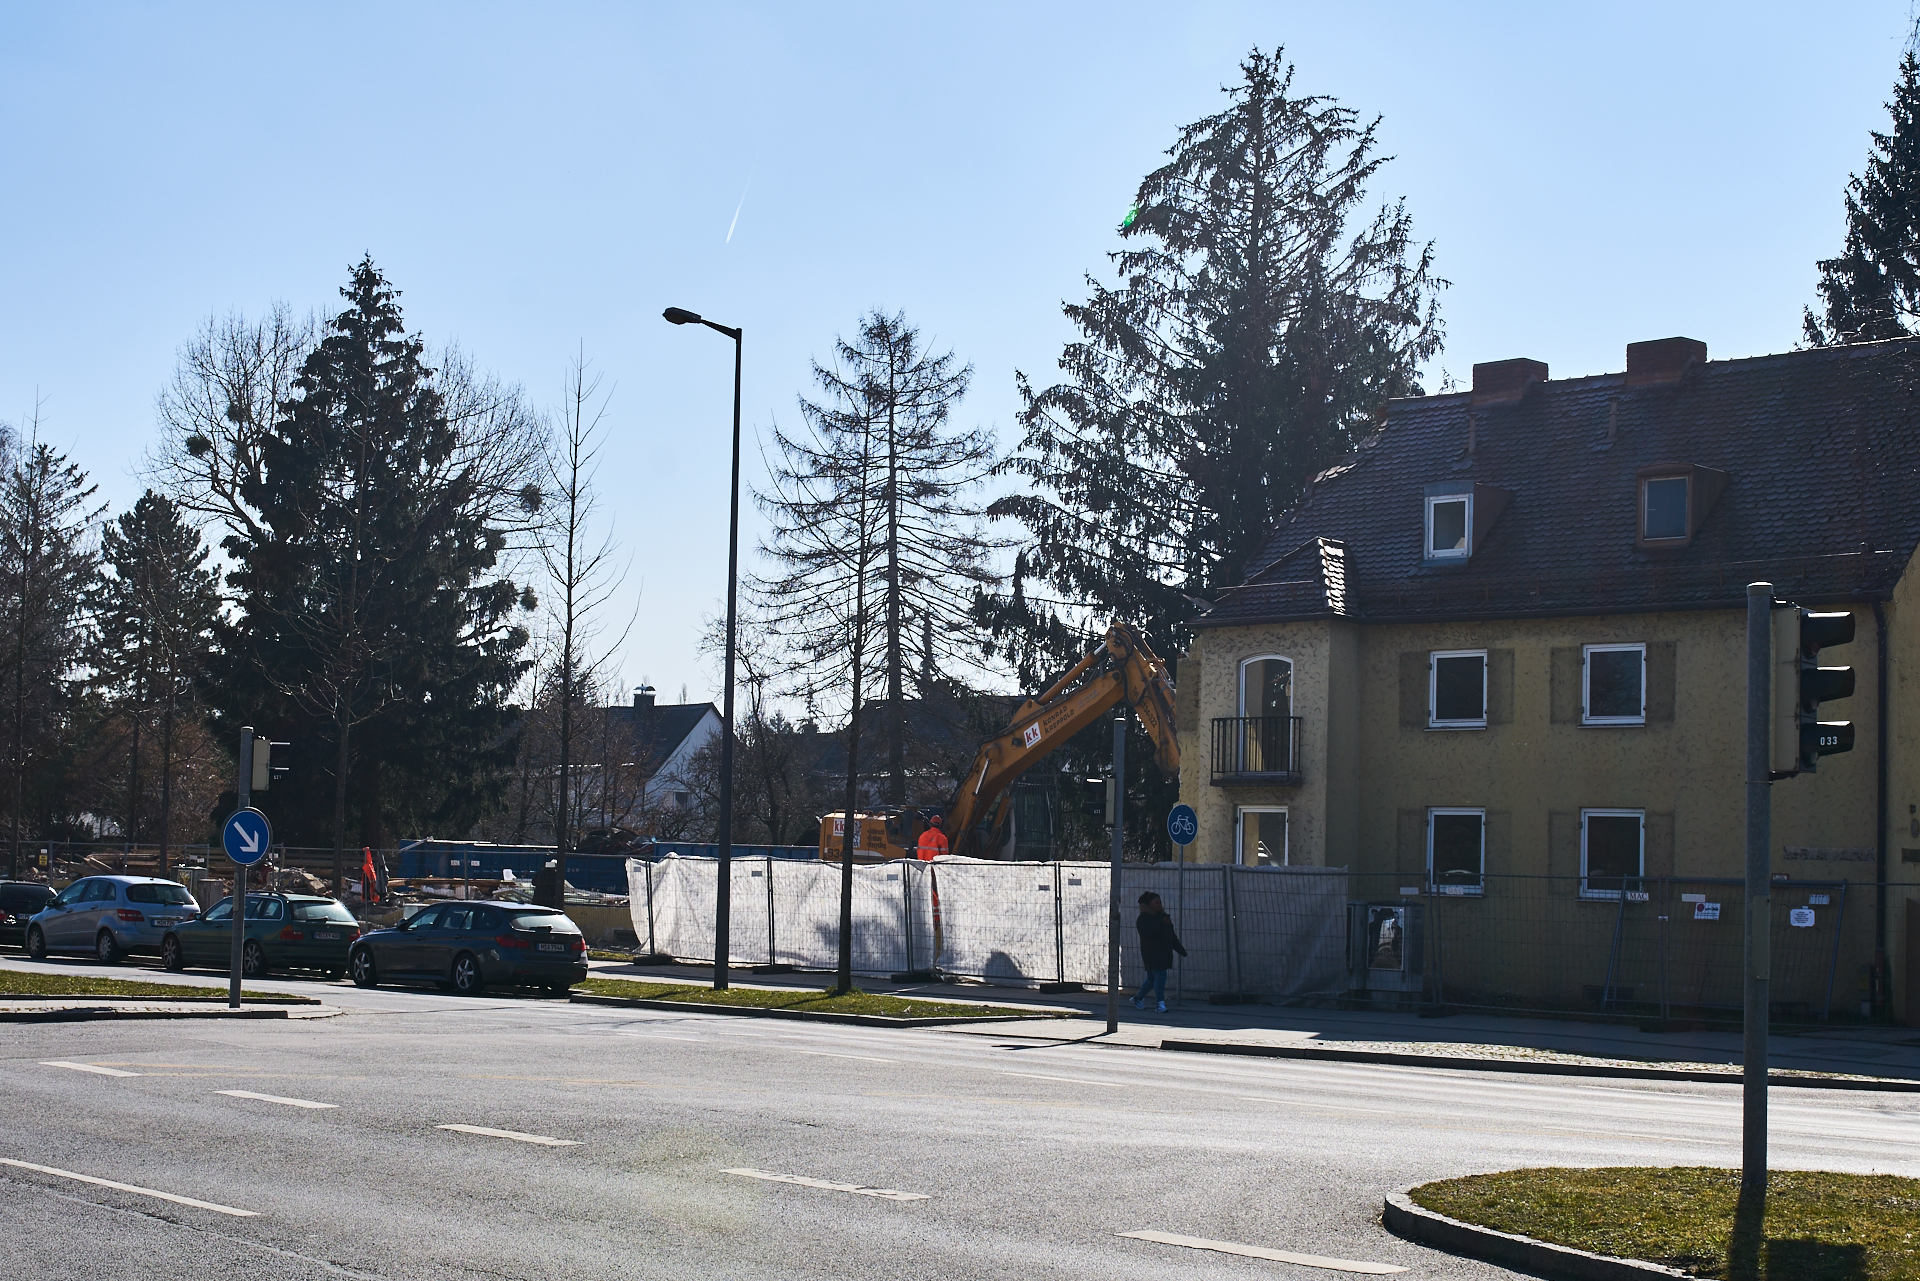 Neuperlach-maikaefersiedlung am 17.03.2016